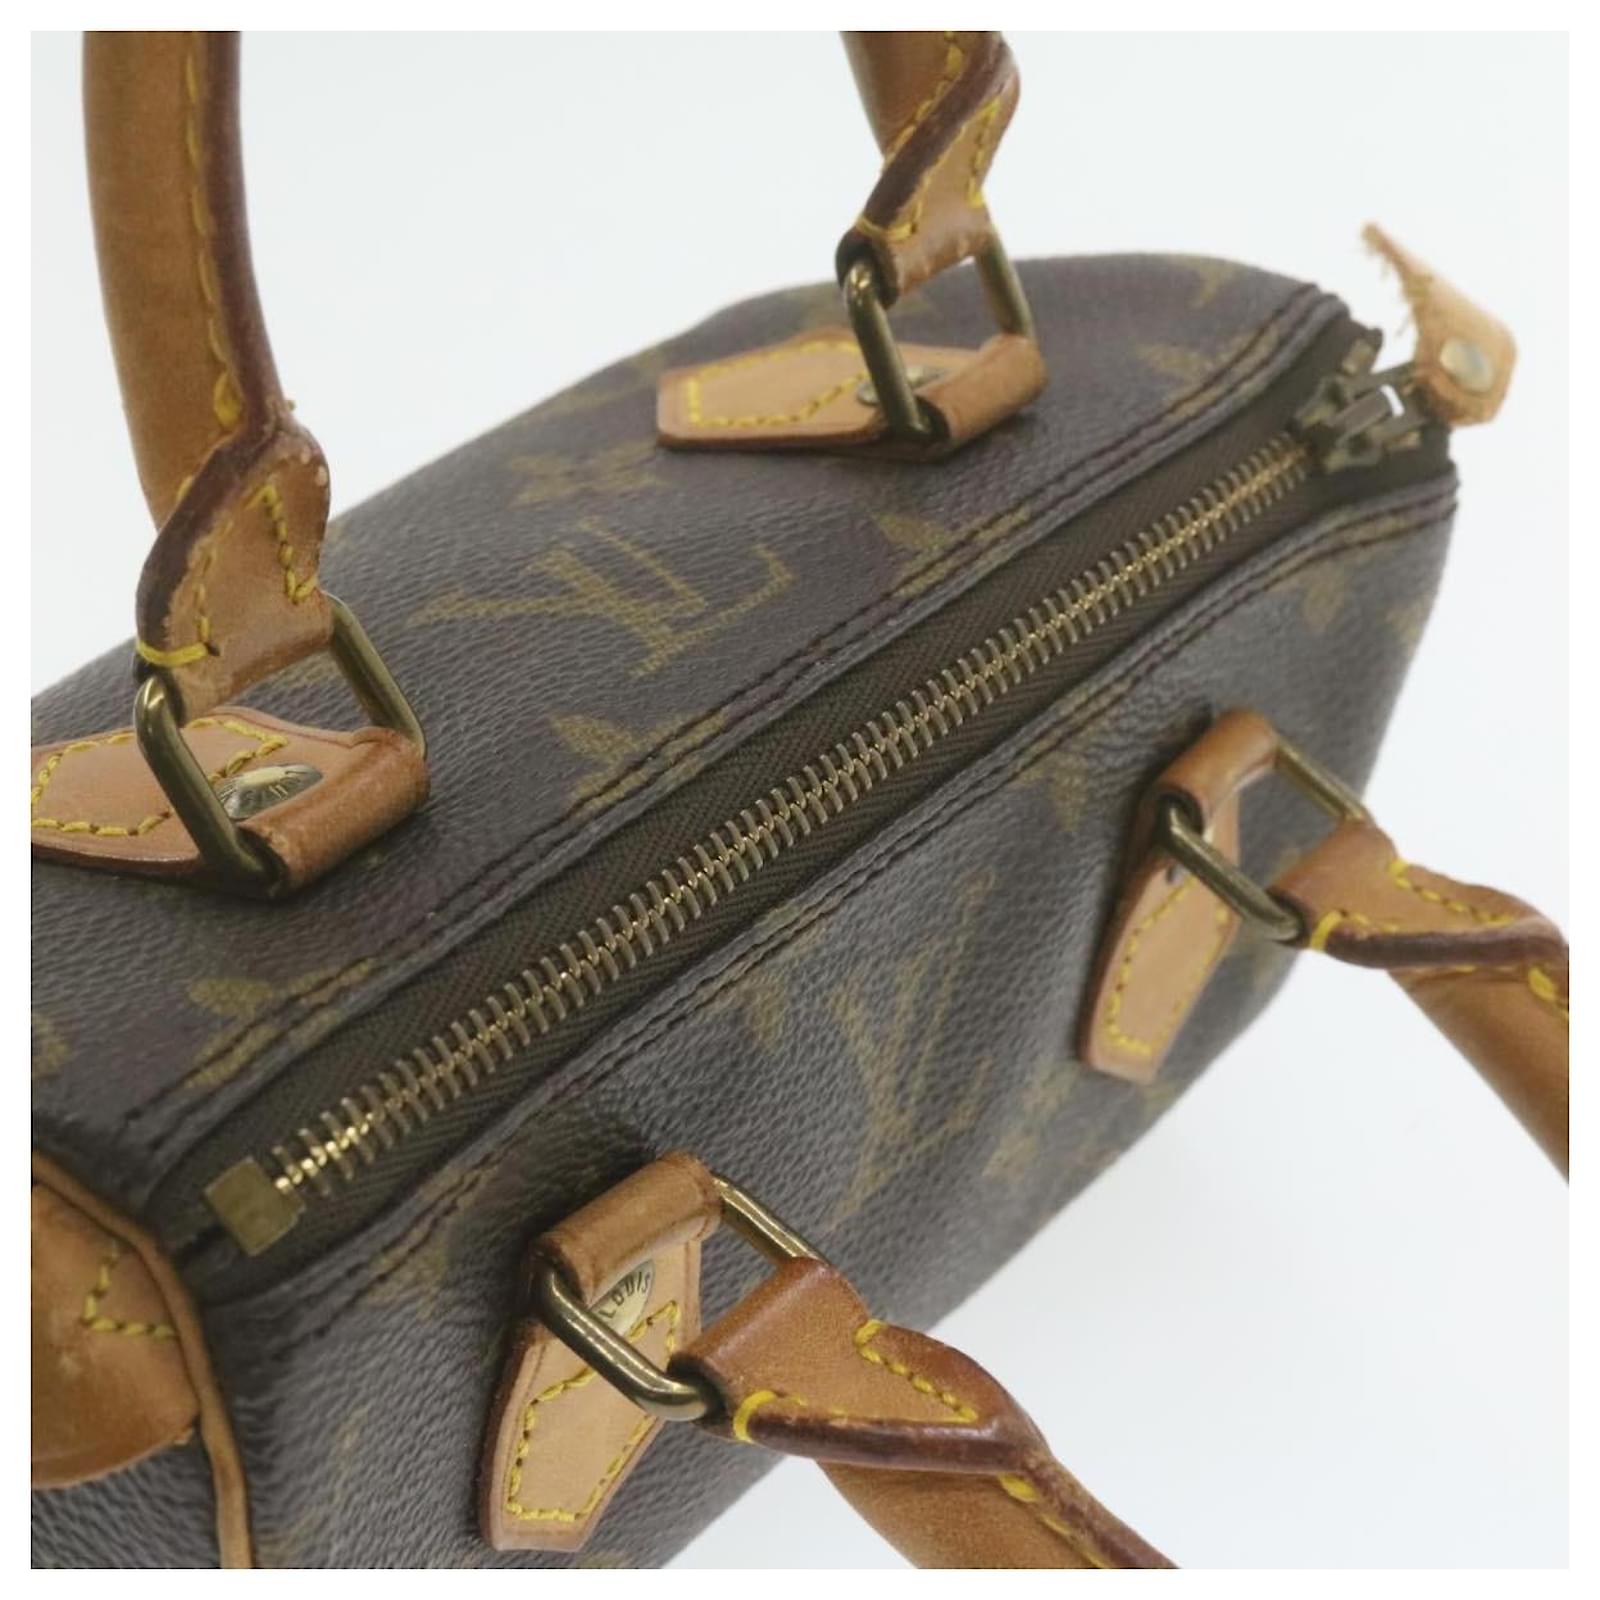 Milla cloth mini bag Louis Vuitton Brown in Cloth - 37790027